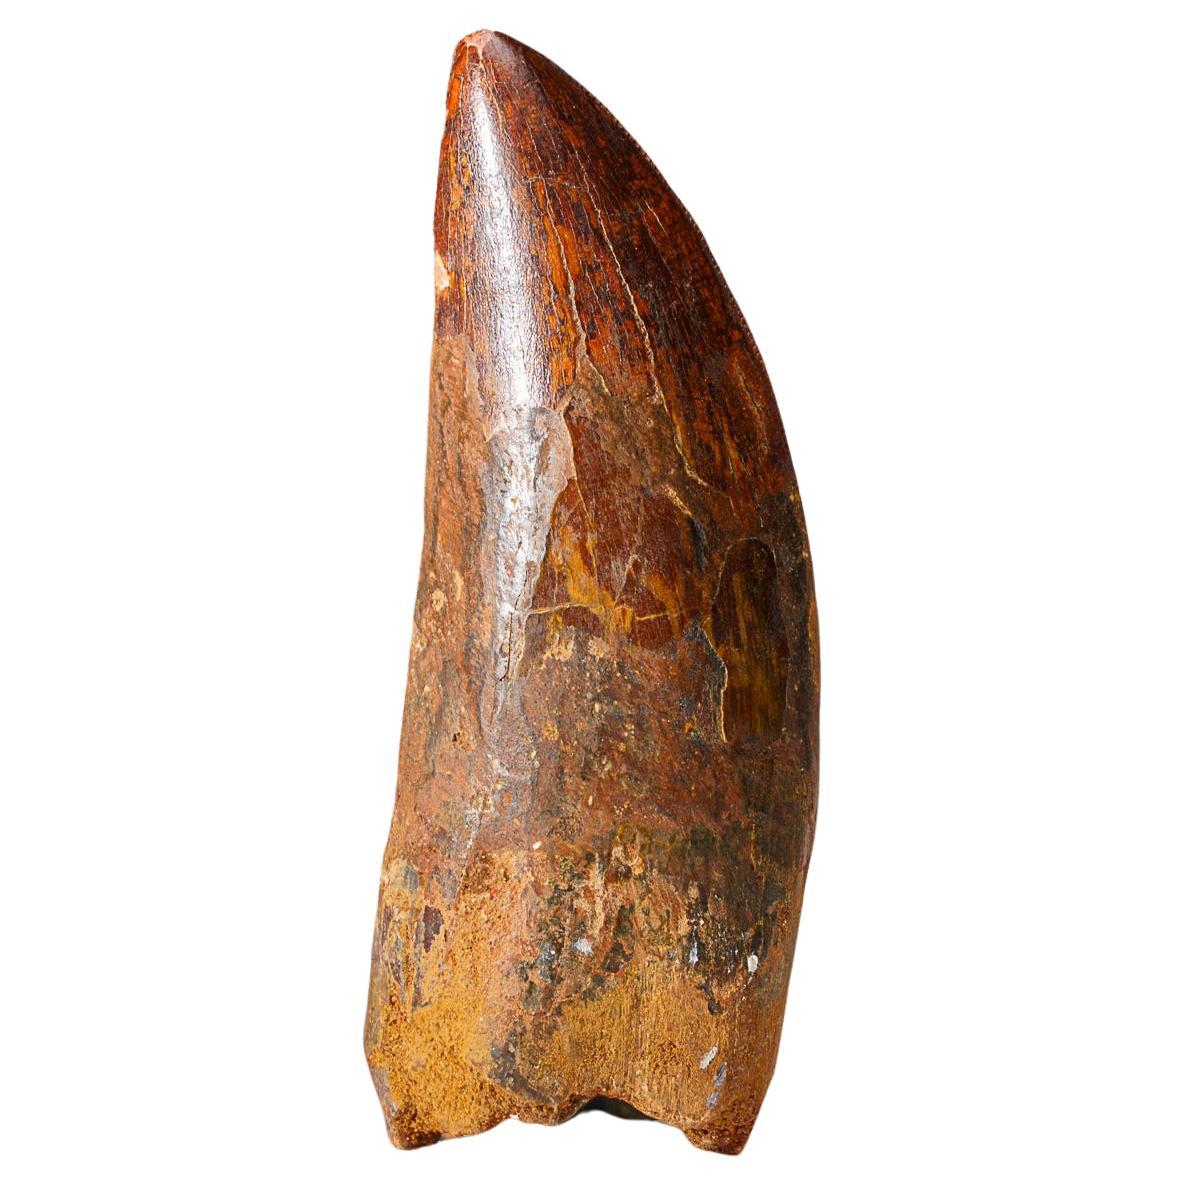 Genuine Natural Carcharodontosaurus Dinosaur Tooth (74 grams)